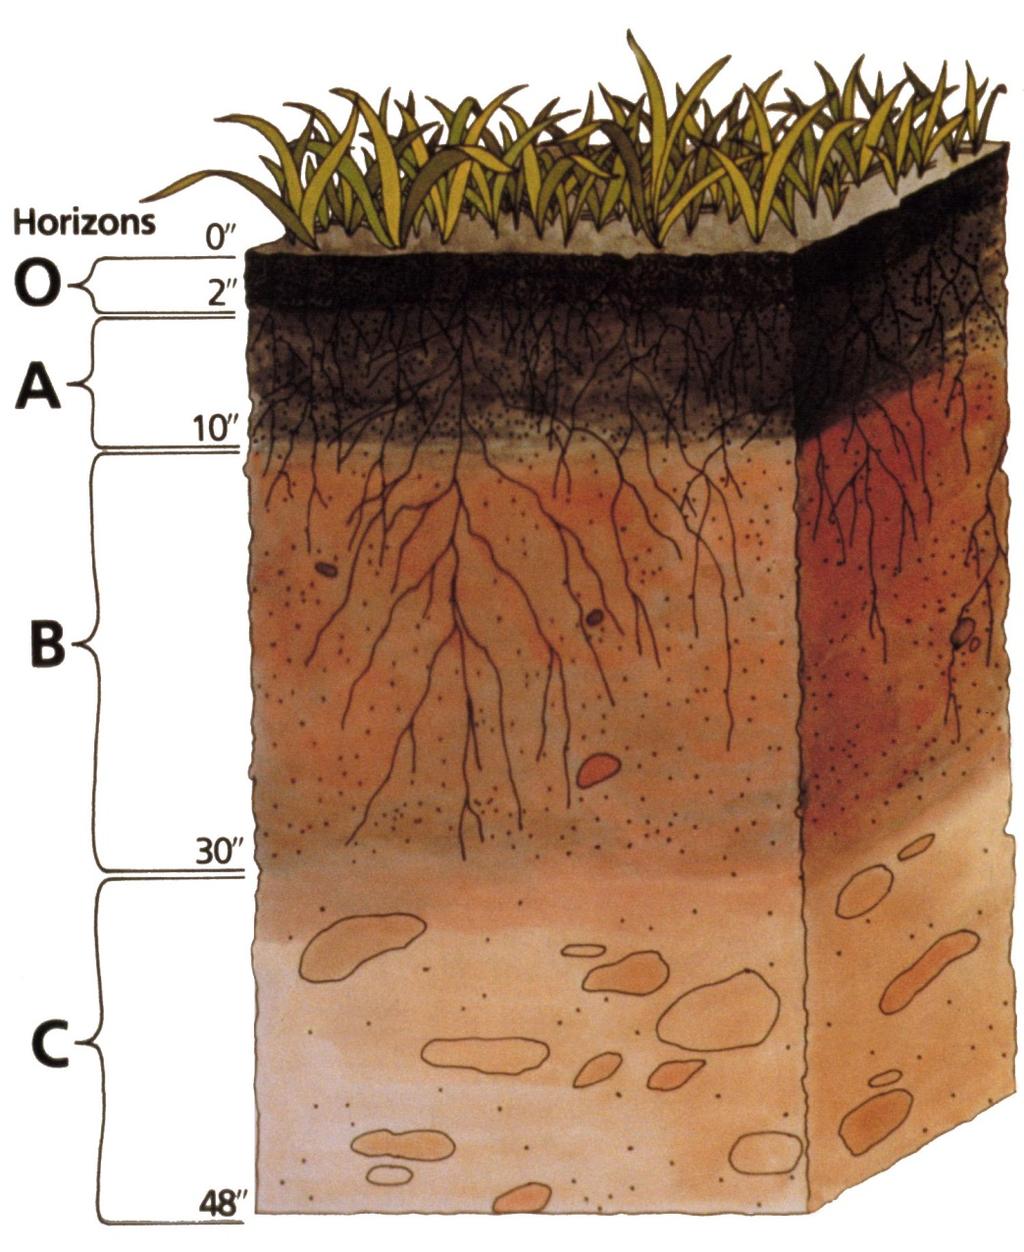 horizon subsoil where minerals accumulate C